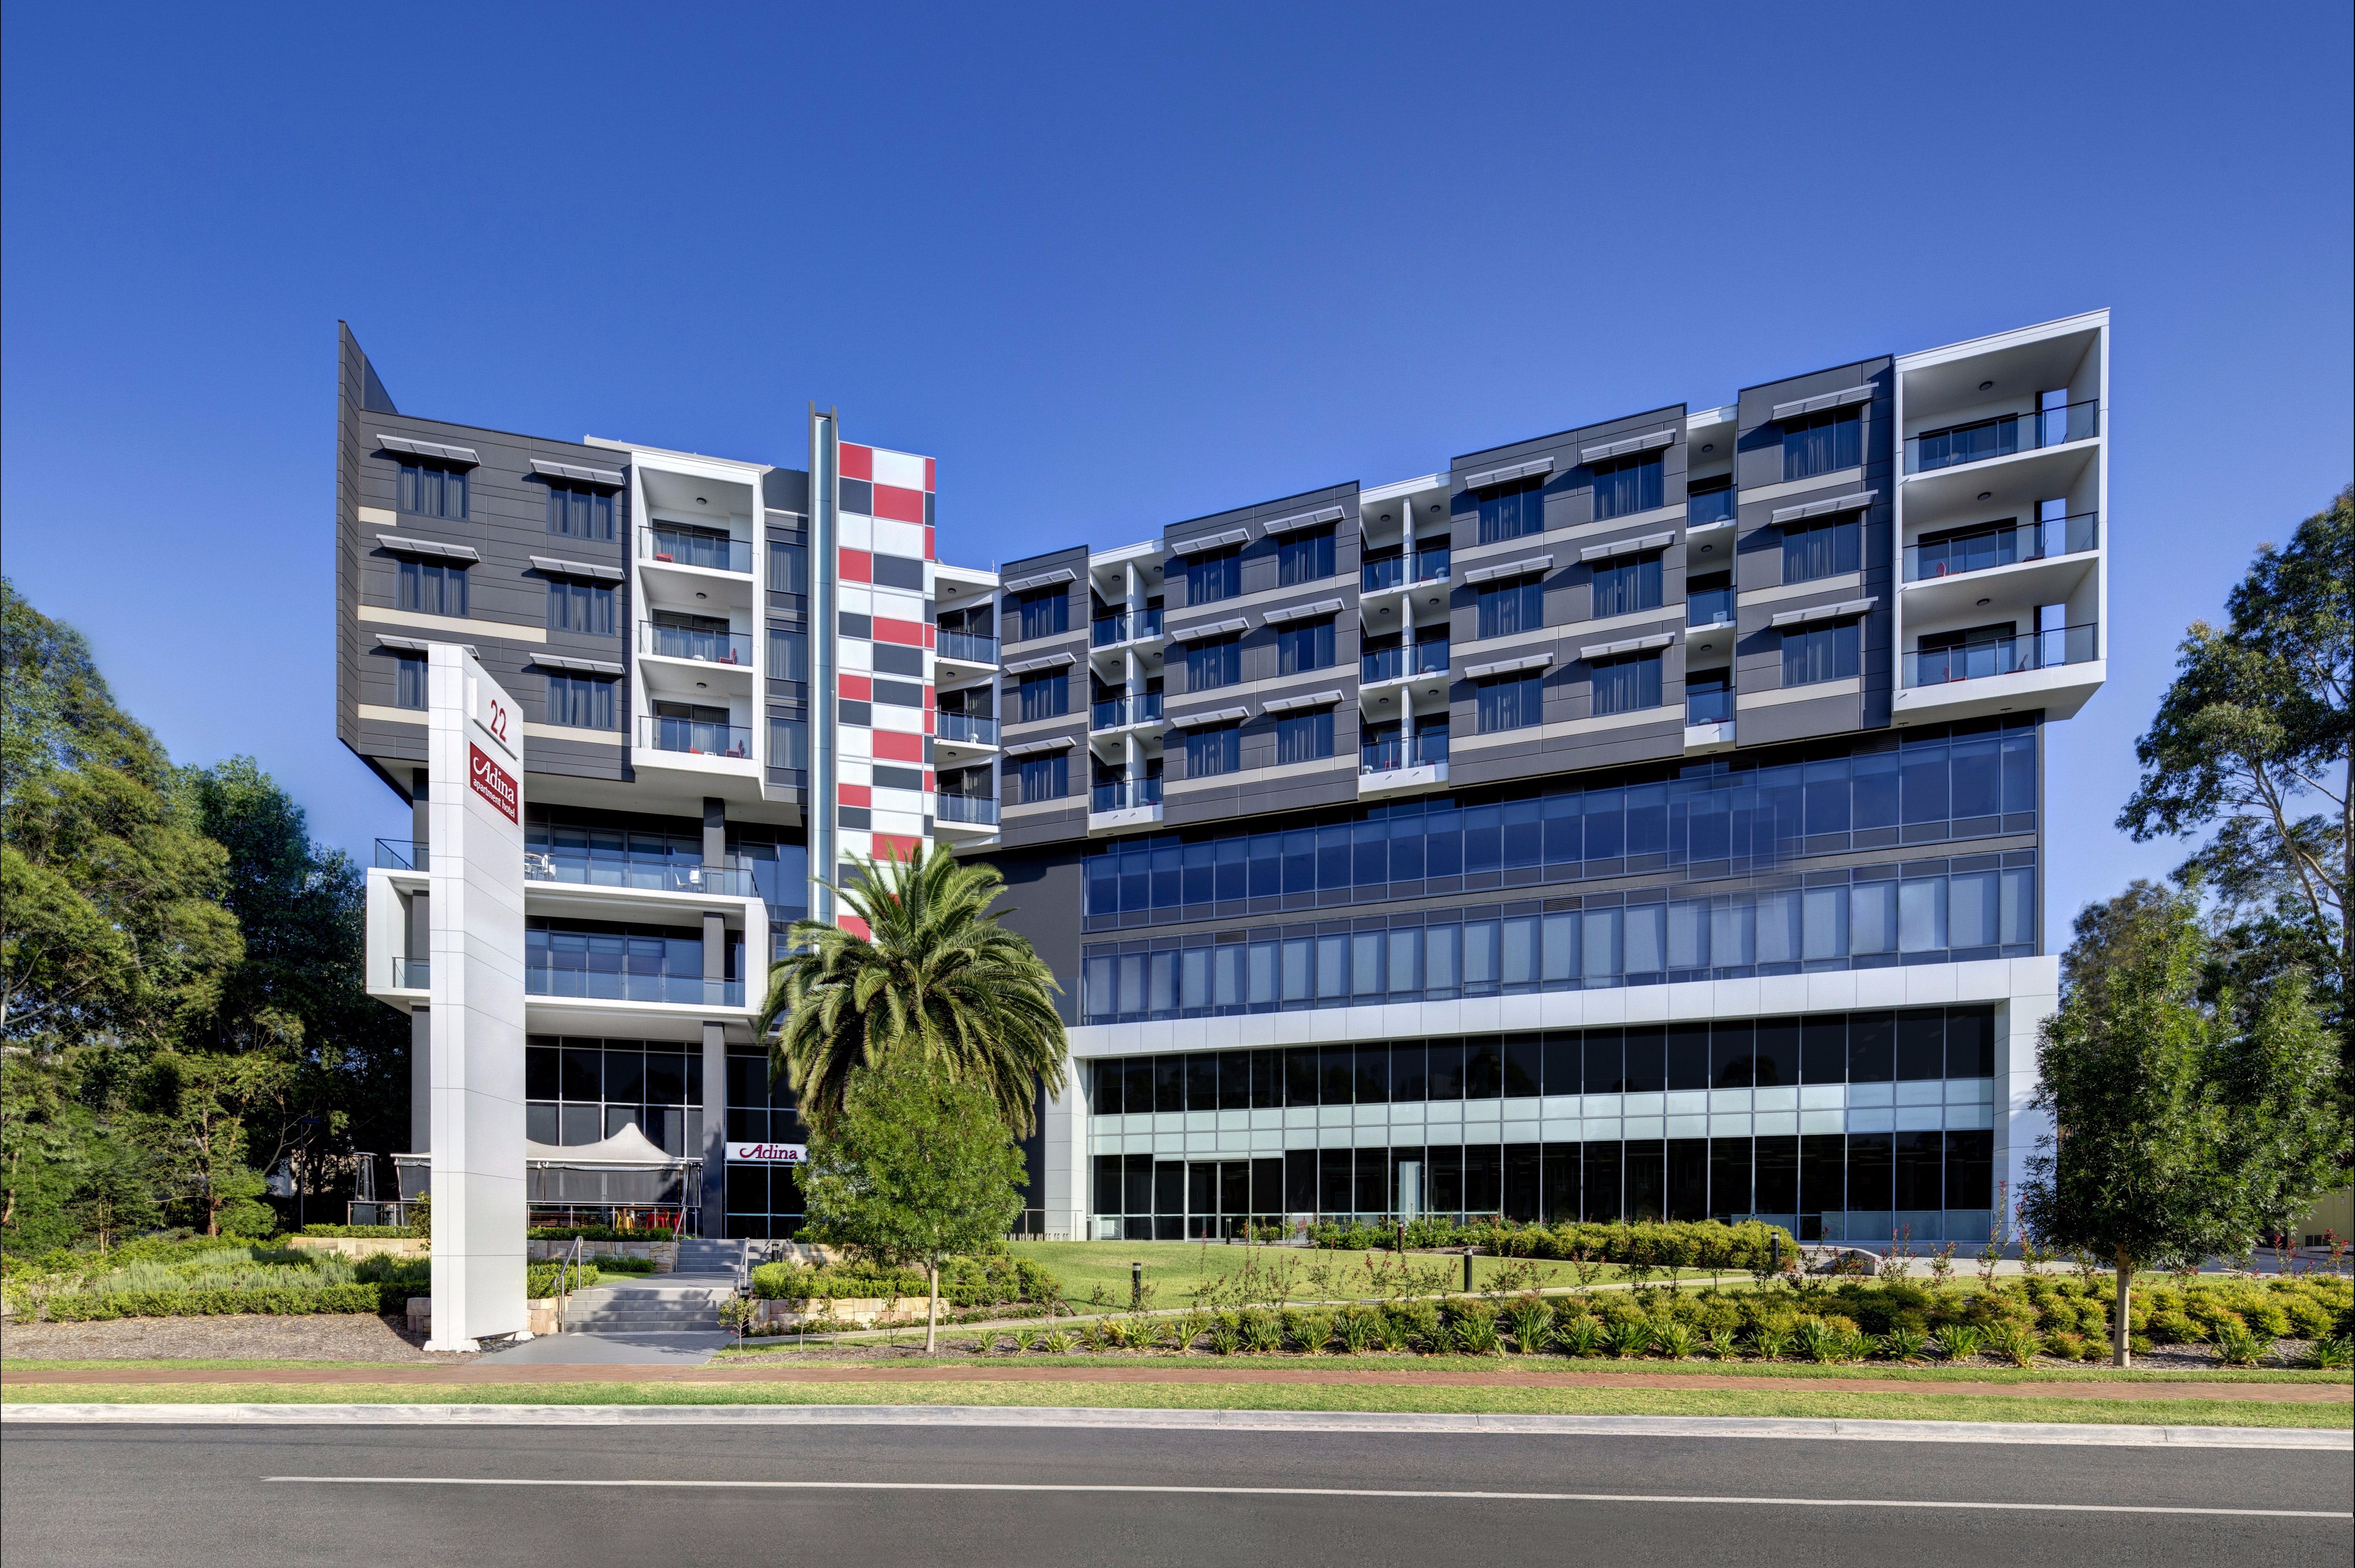 Adina Apartment Hotel Norwest Sydney - Nambucca Heads Accommodation